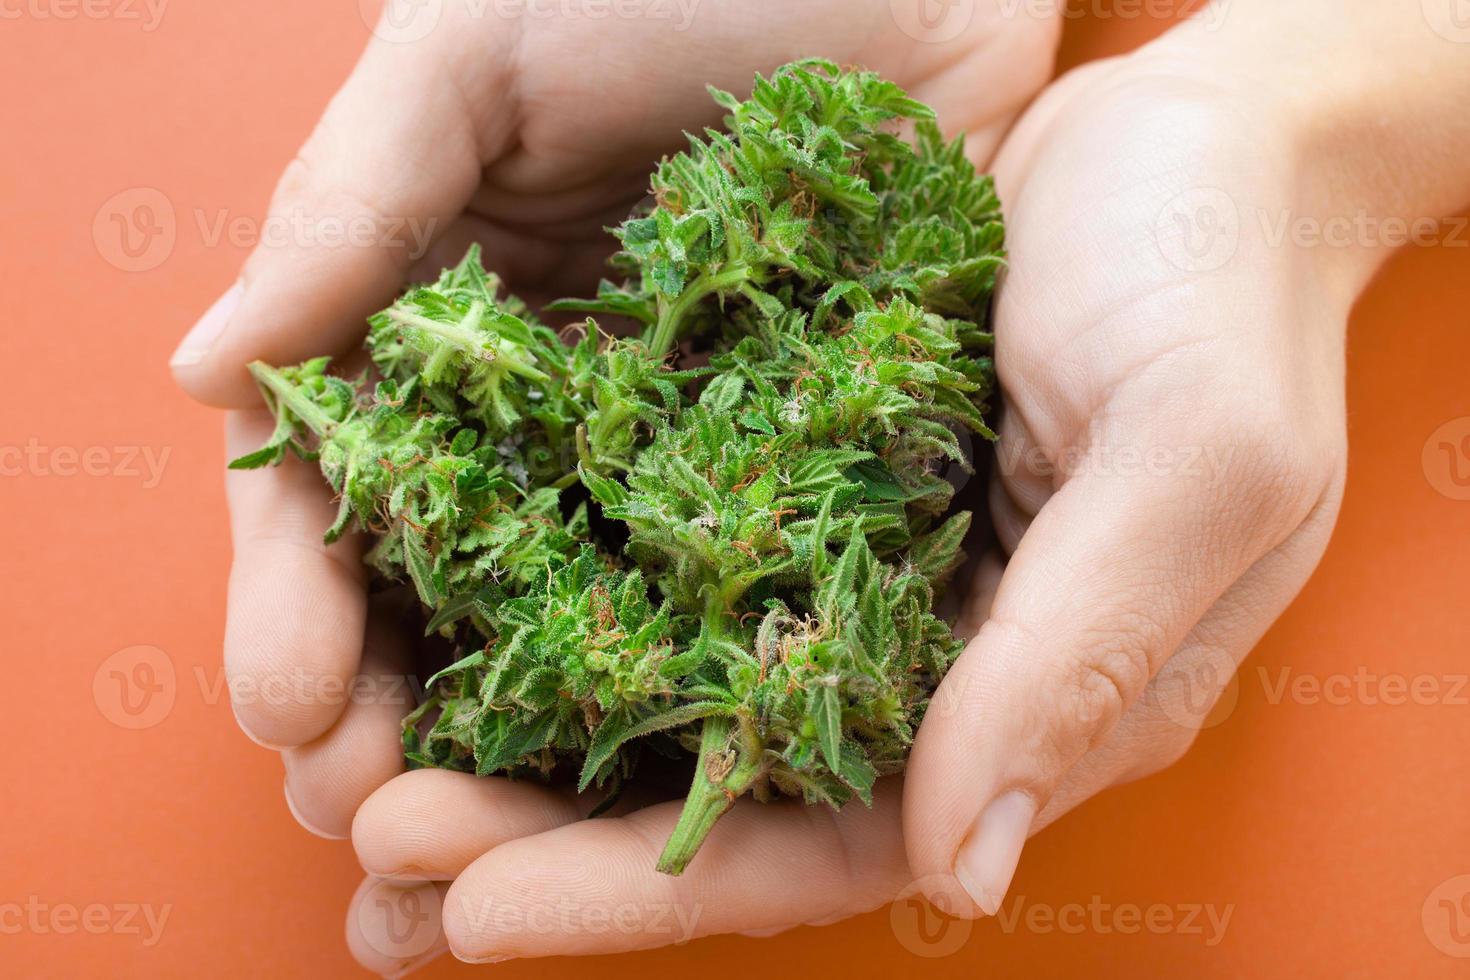 botões de cannabis nas mãos foto